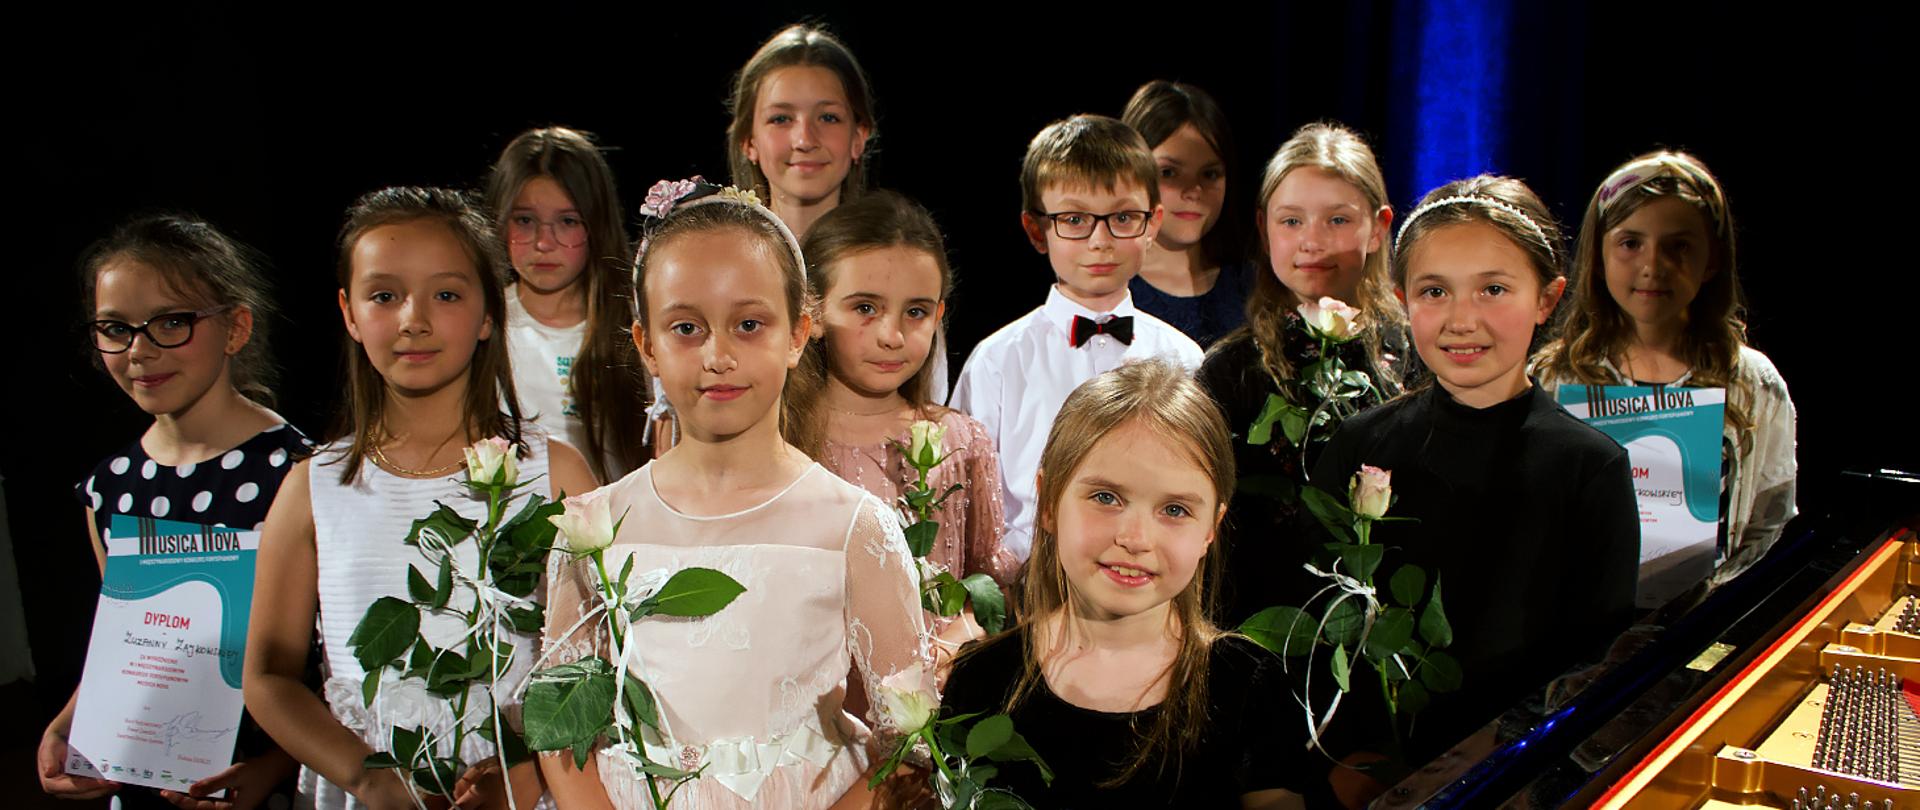 Na zdjęciu grupa 12 dzieci, 11 dziewczynek i jeden chłopiec, dzieci stoją, patrzą w kierunku robiącego zdjęcie, w rękach trzymają białe róże i dyplomy, z prawej strony widać fragment fortepianu.